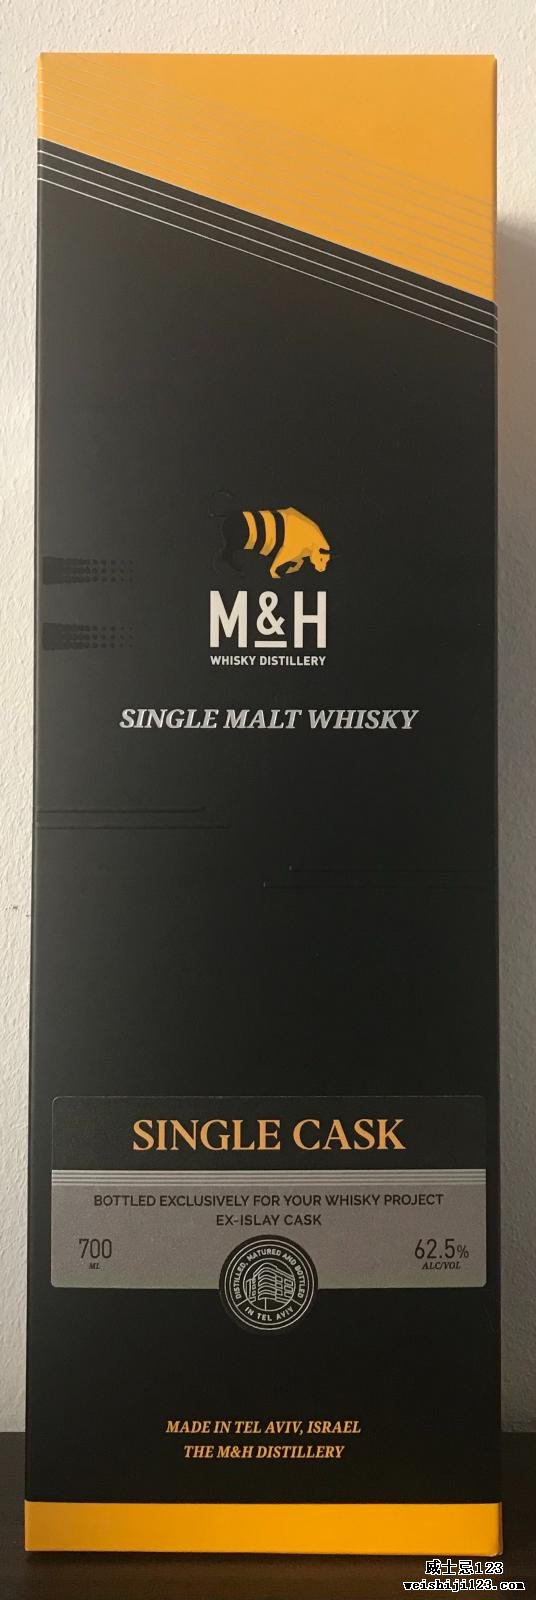 M&H 2017